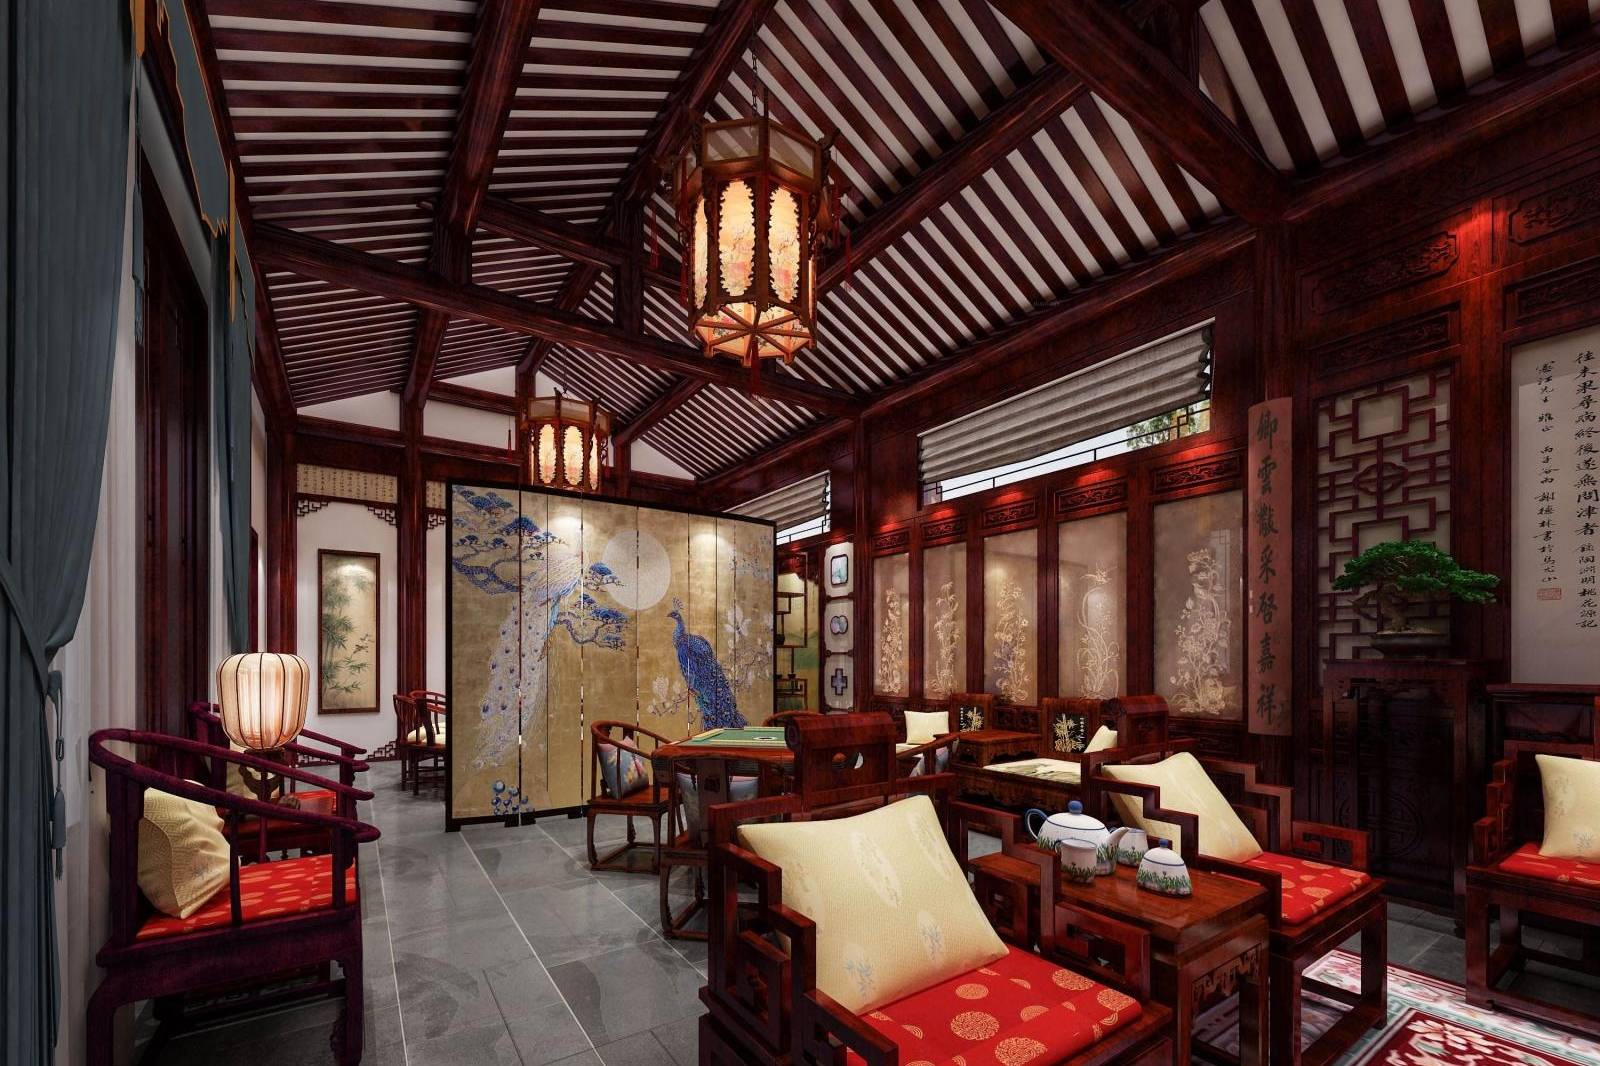 中式古典风格红木装修古色古香惊艳夺目